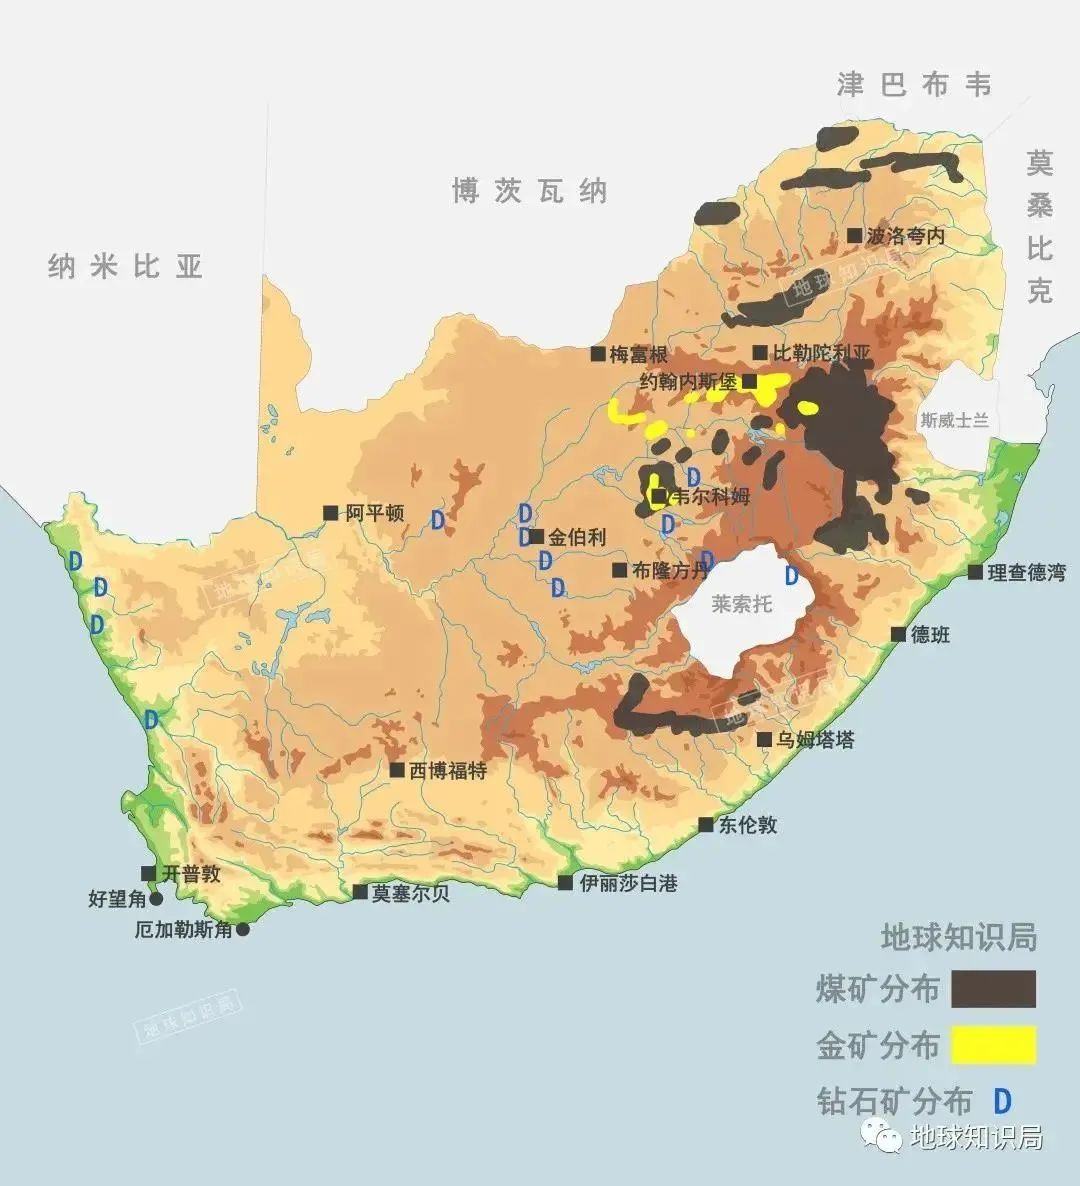 南非的人口也只有不到6000万,跟澳大利亚差不多,但资源比澳大利亚